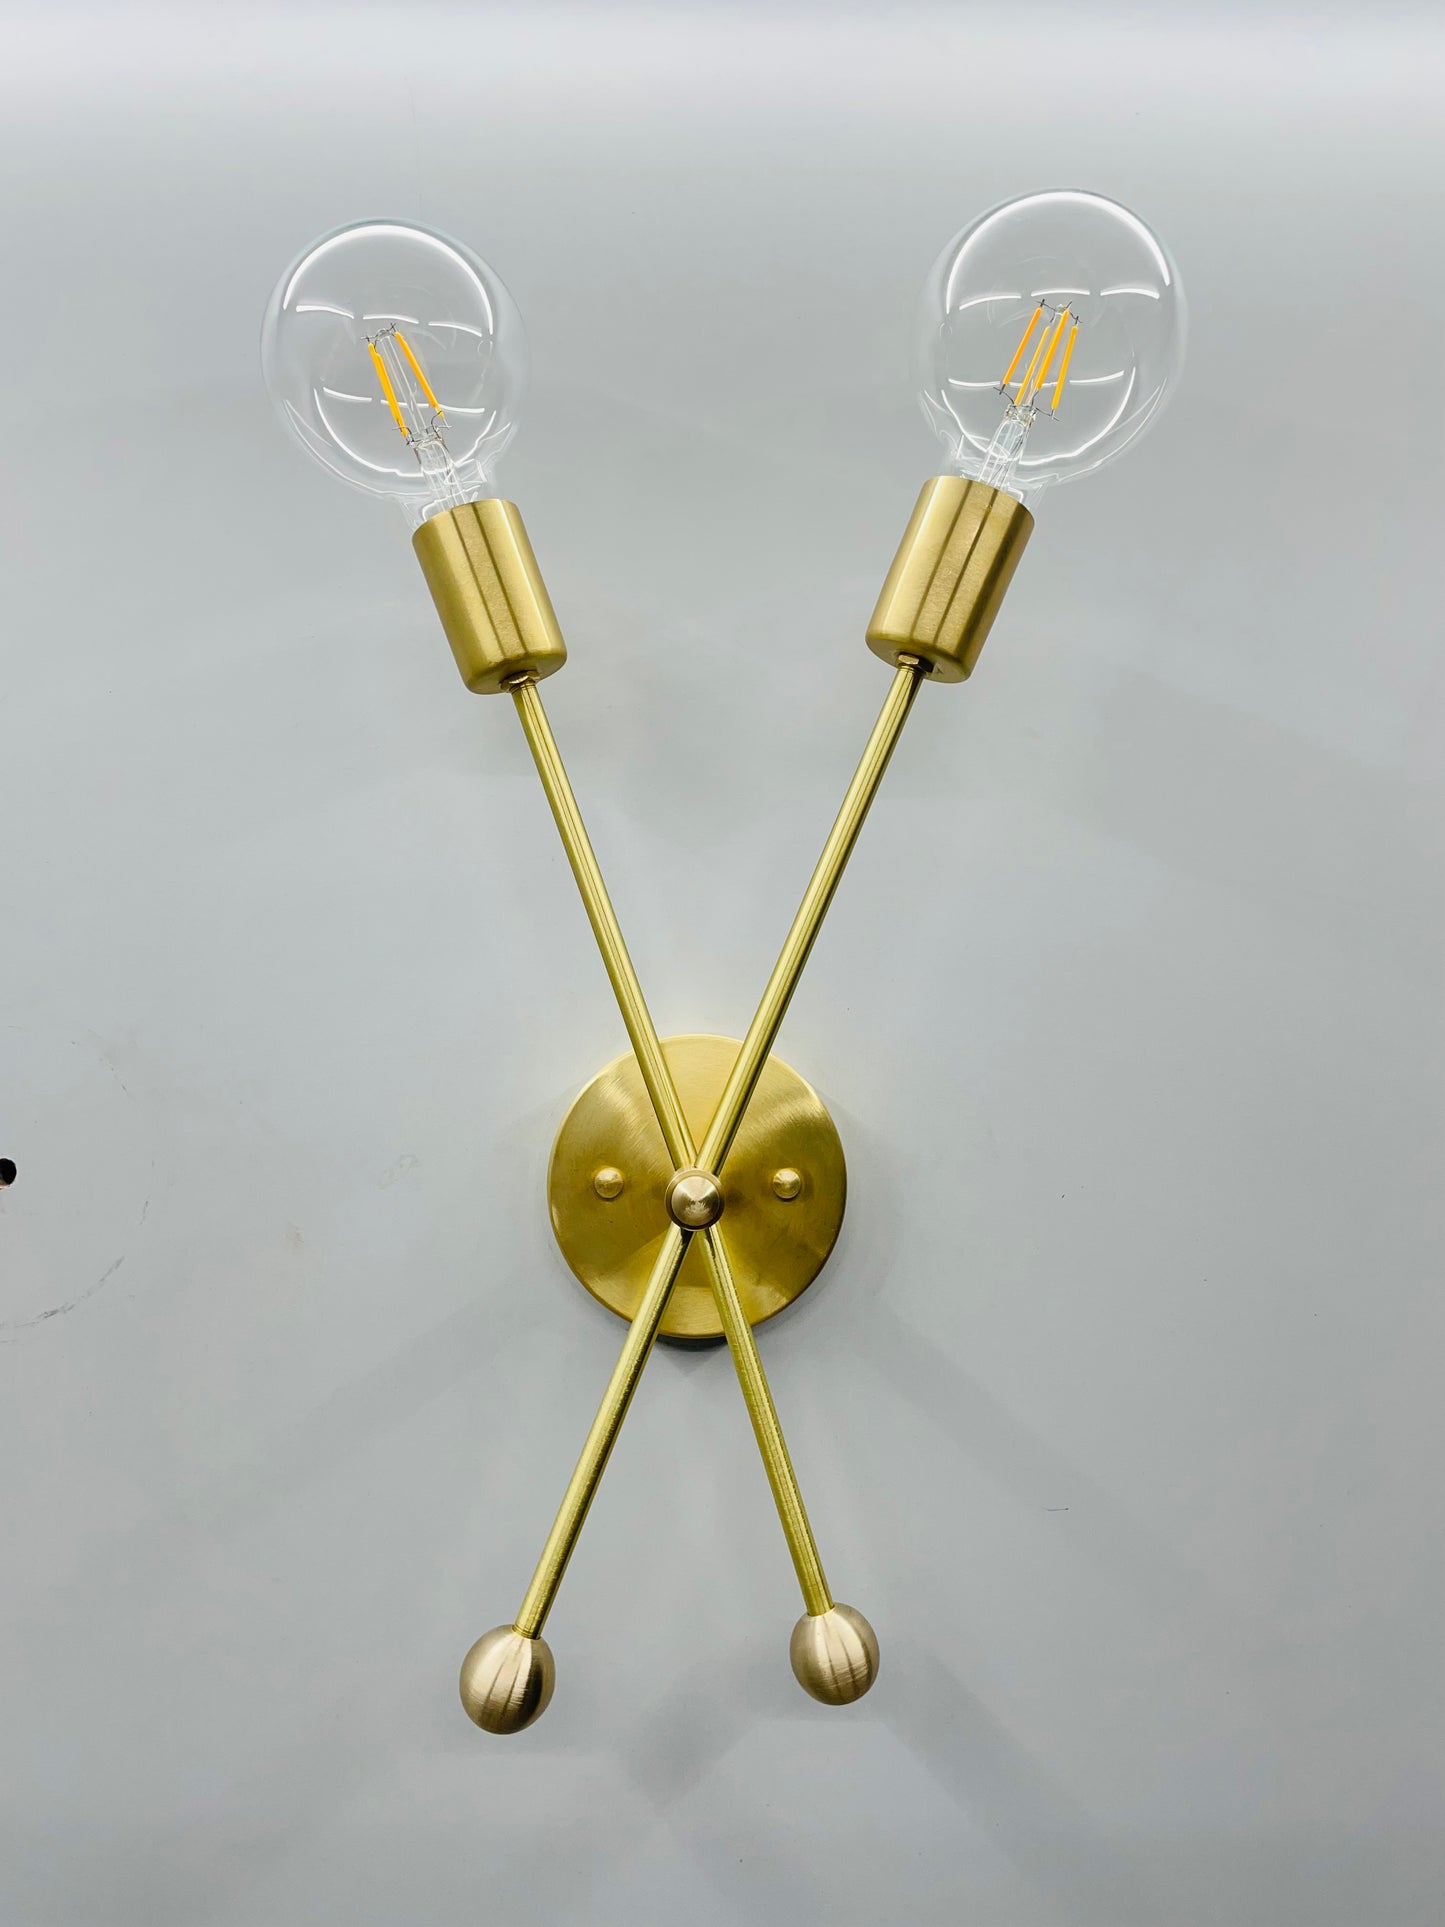 2 Lights Brass Mid Century Modern Sputnik Wall Sconce Light Wall Fixture - Global Lights Hub